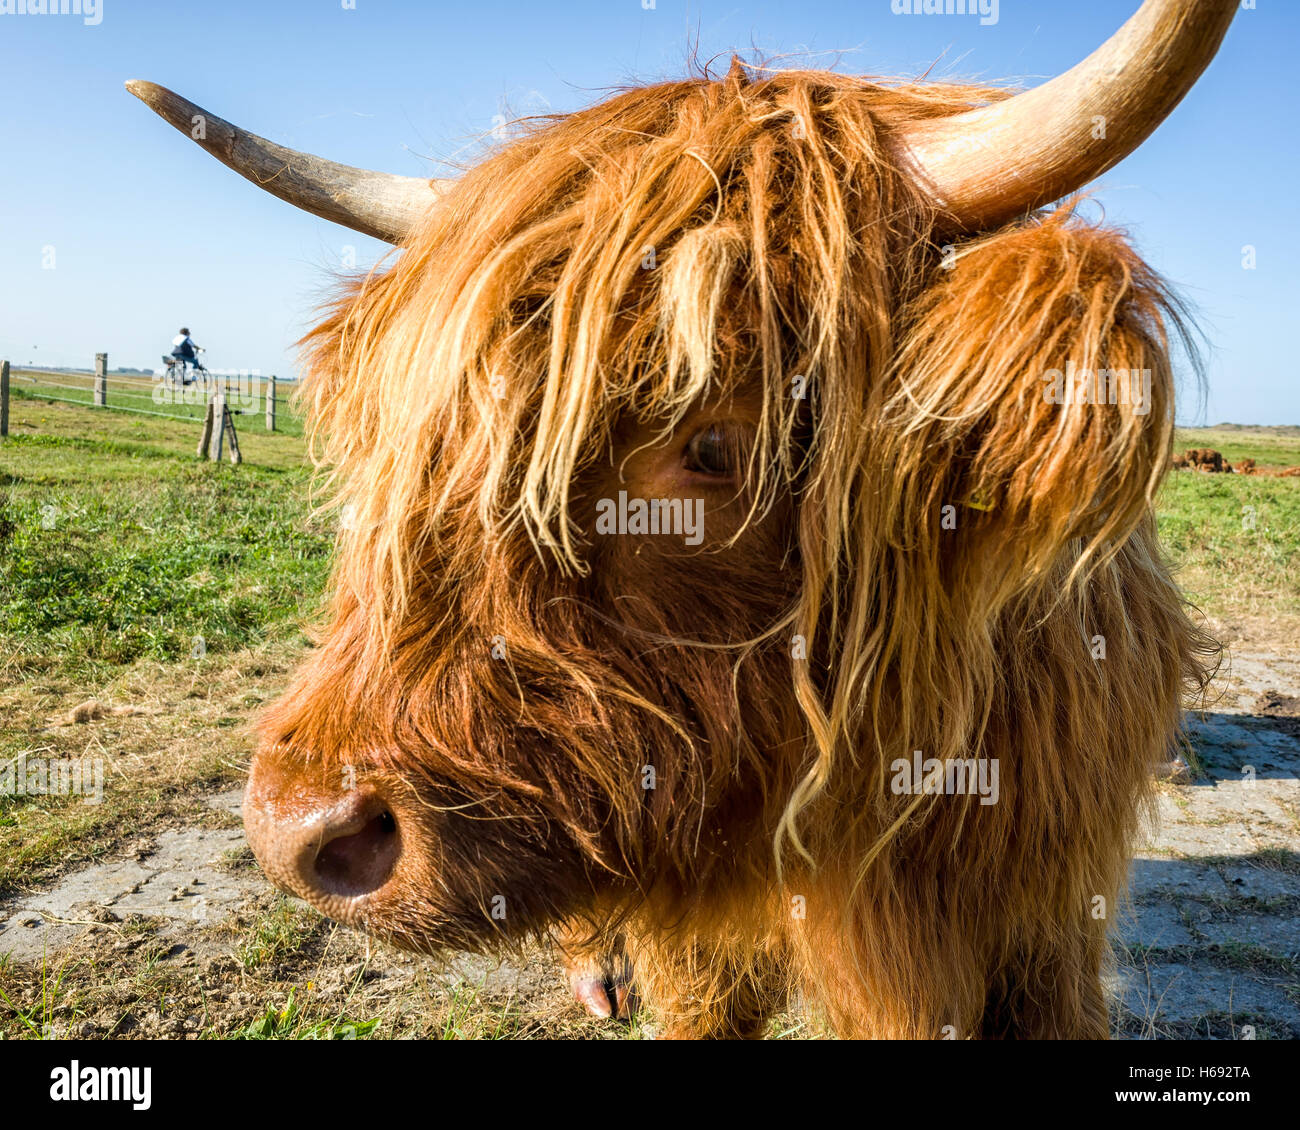 Langeoog. Germania. Una testa ritratto di un altopiano di bestiame con un occhio rivolto verso il visualizzatore e un avvisatore acustico che si estende oltre la parte superiore dell'immagine. Foto Stock